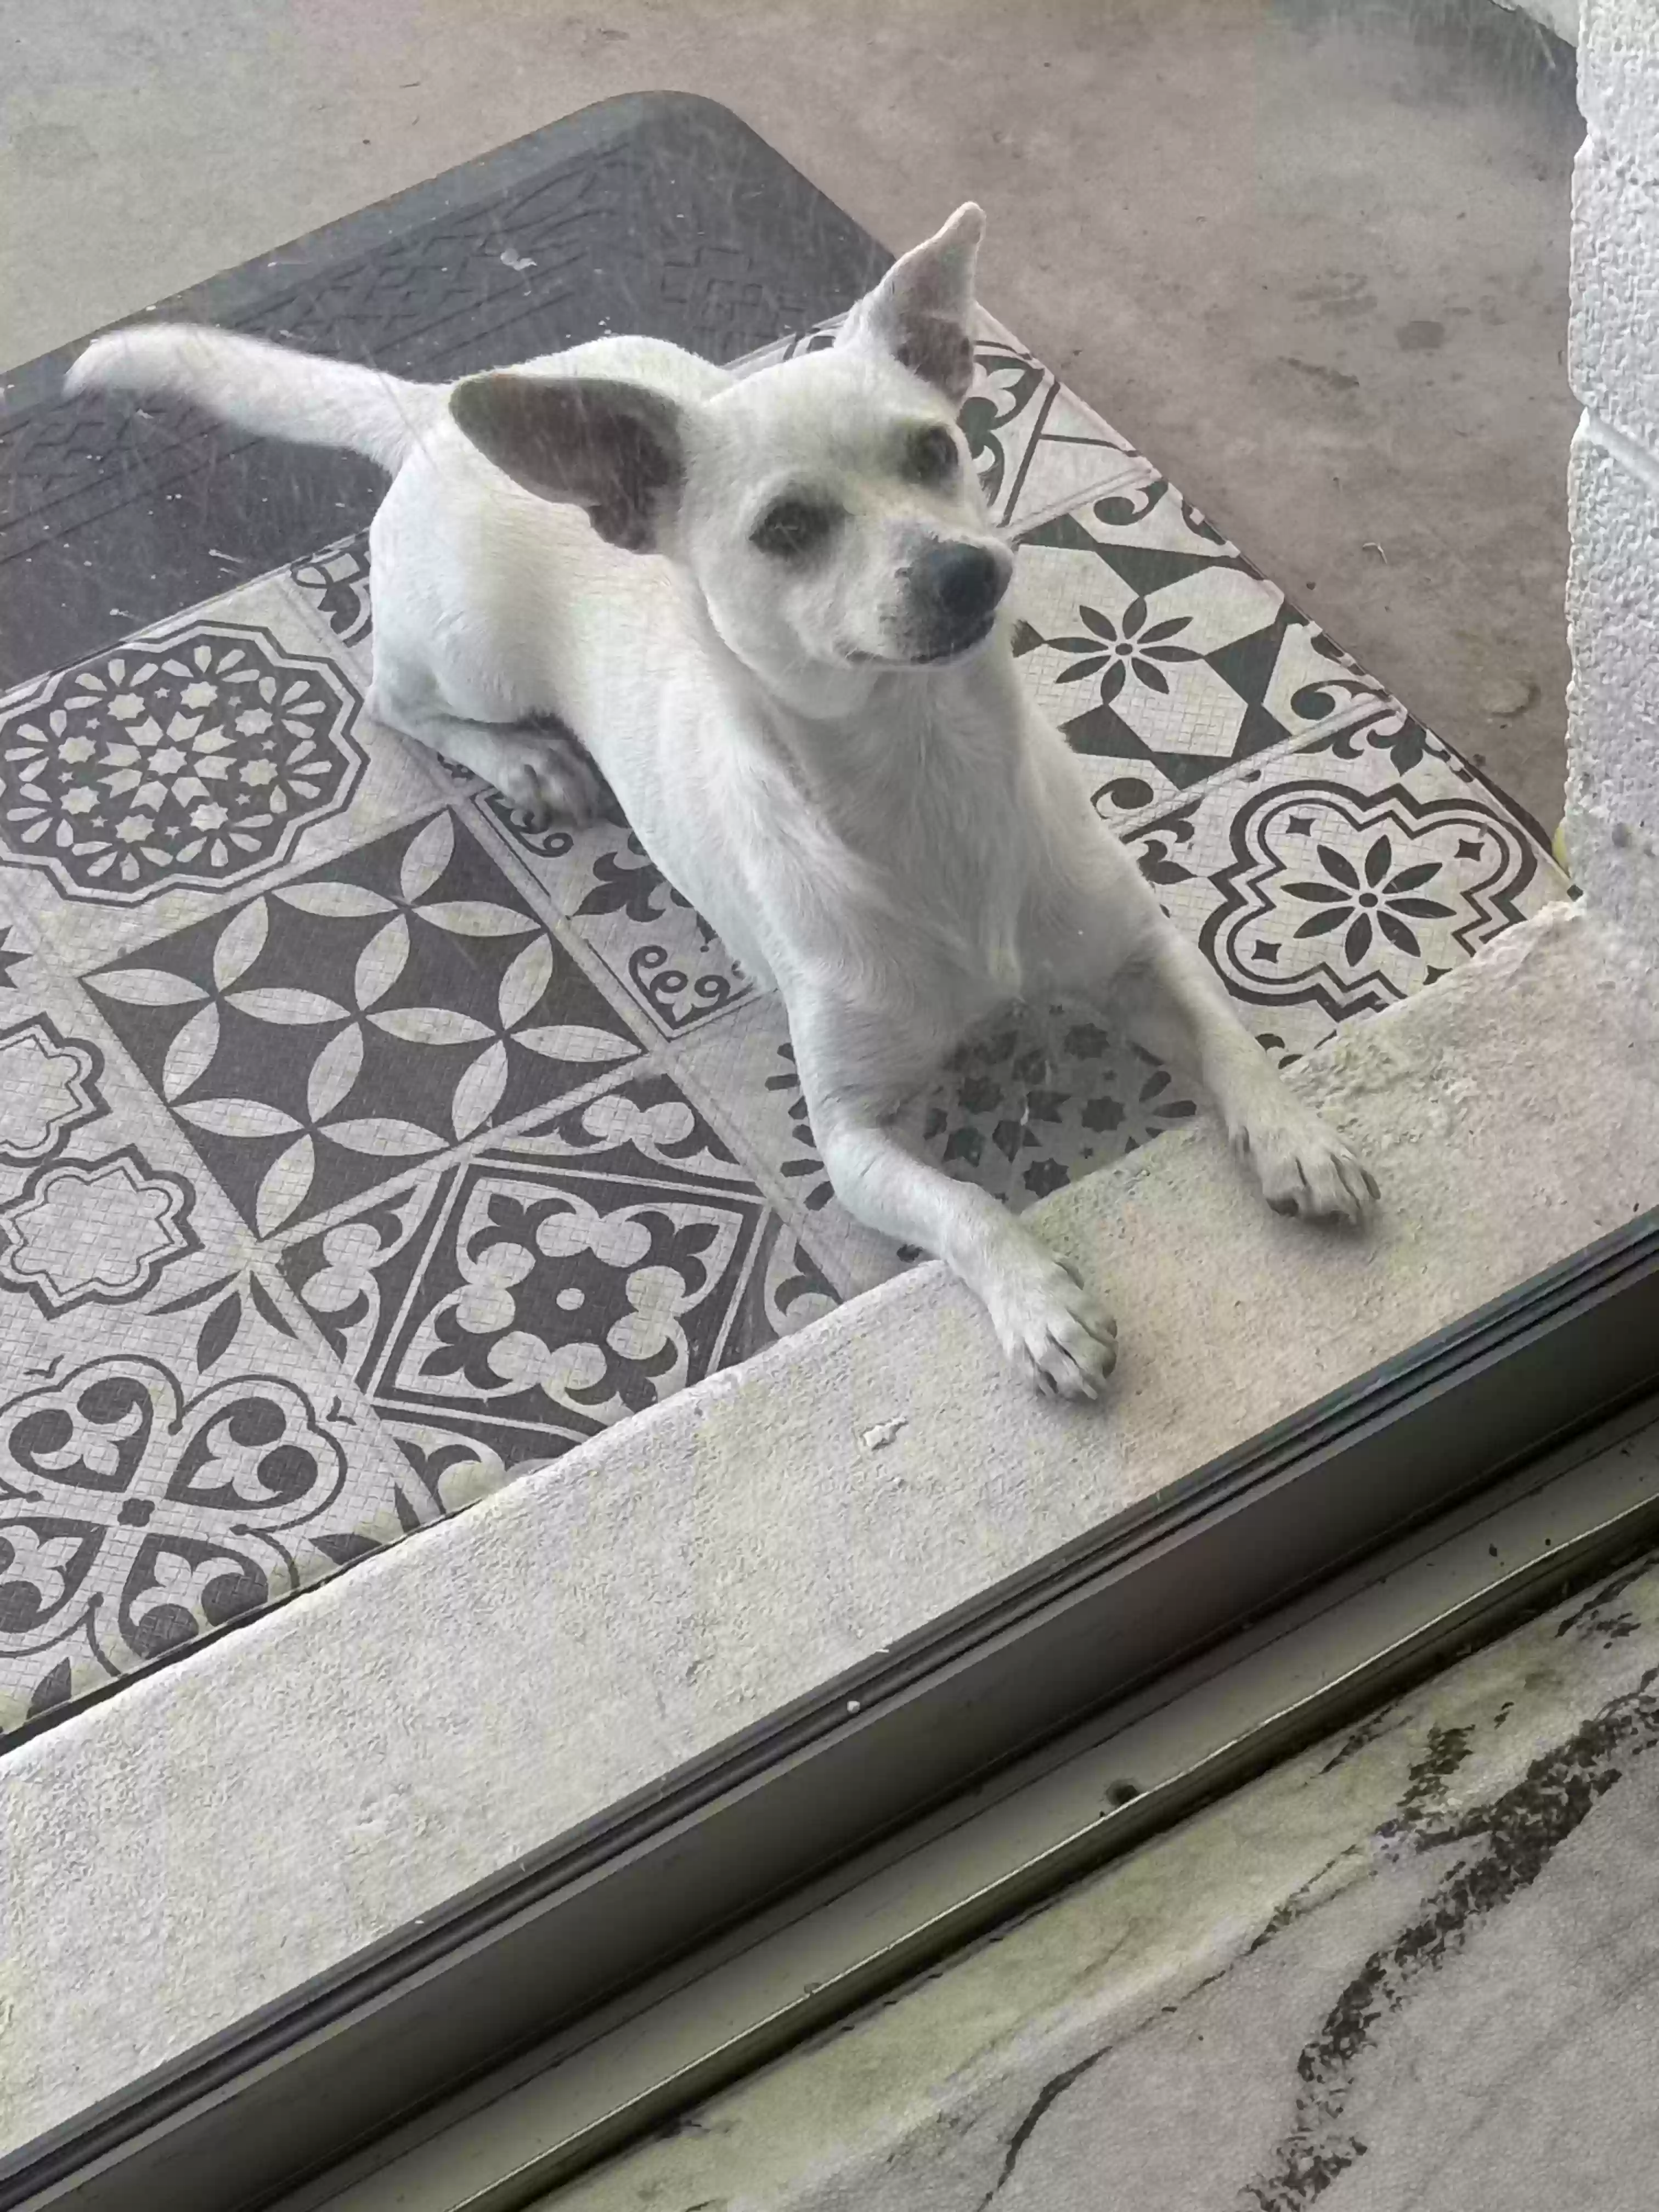 adoptable Dog in Mesa,AZ named Juno